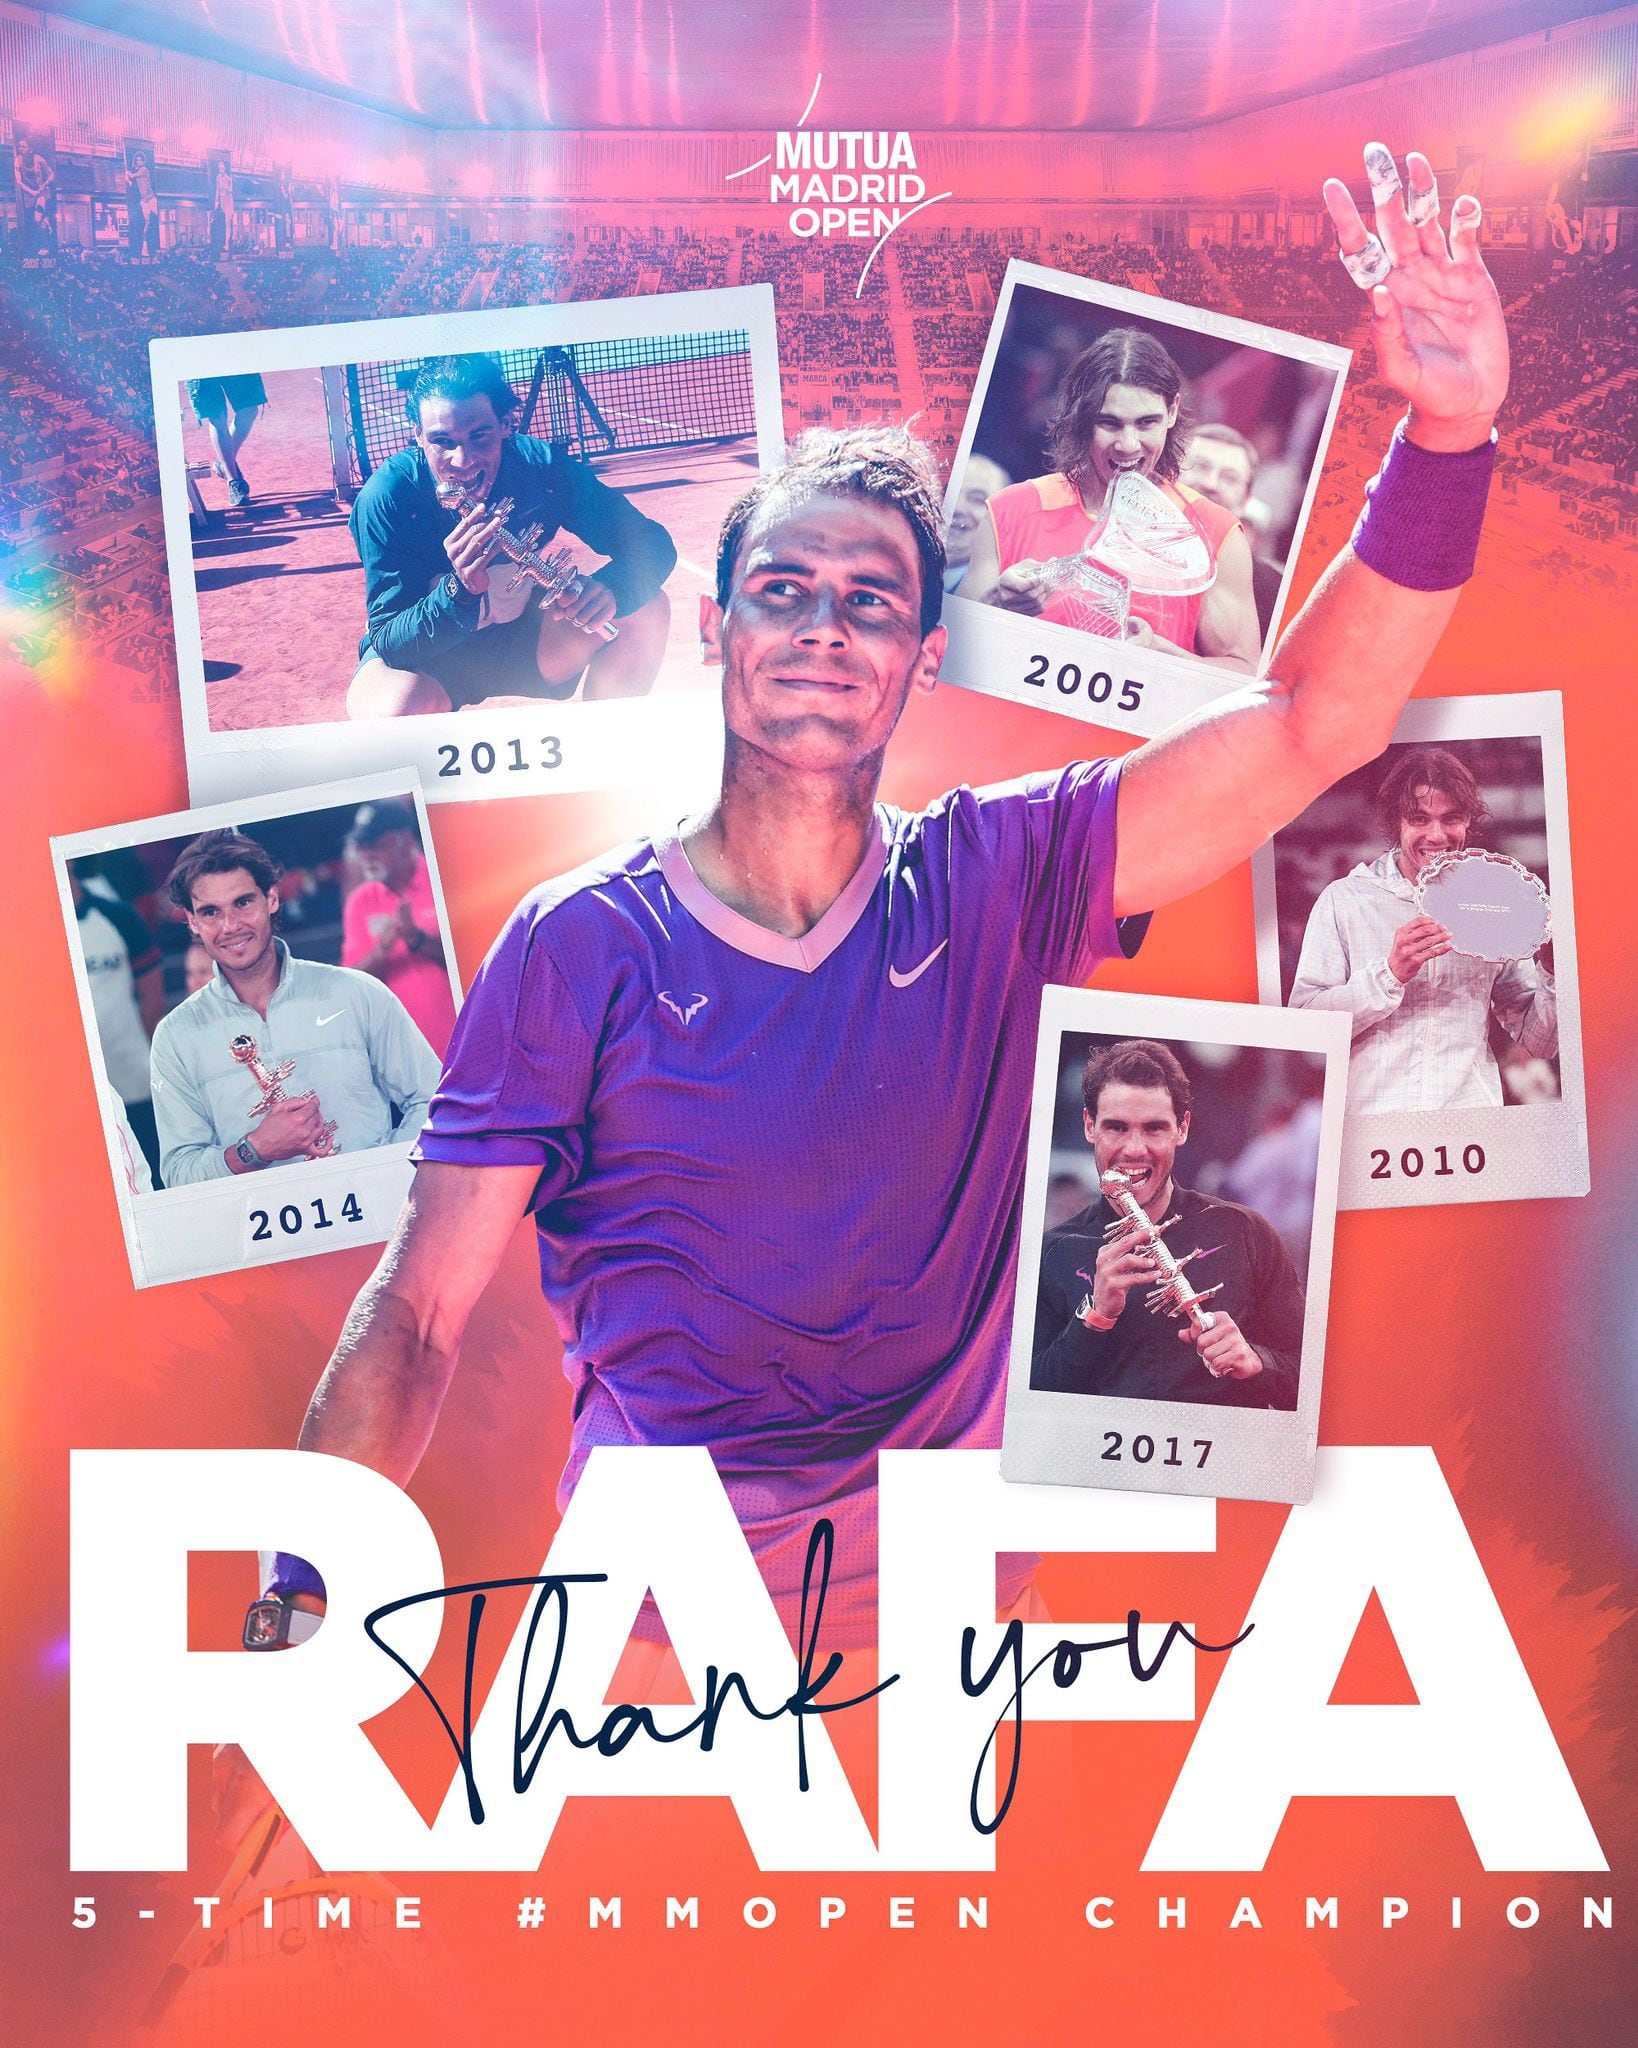 Post de despedida del Mutua Madrid Open a Rafa Nadal (@@MutuaMadridOpen)